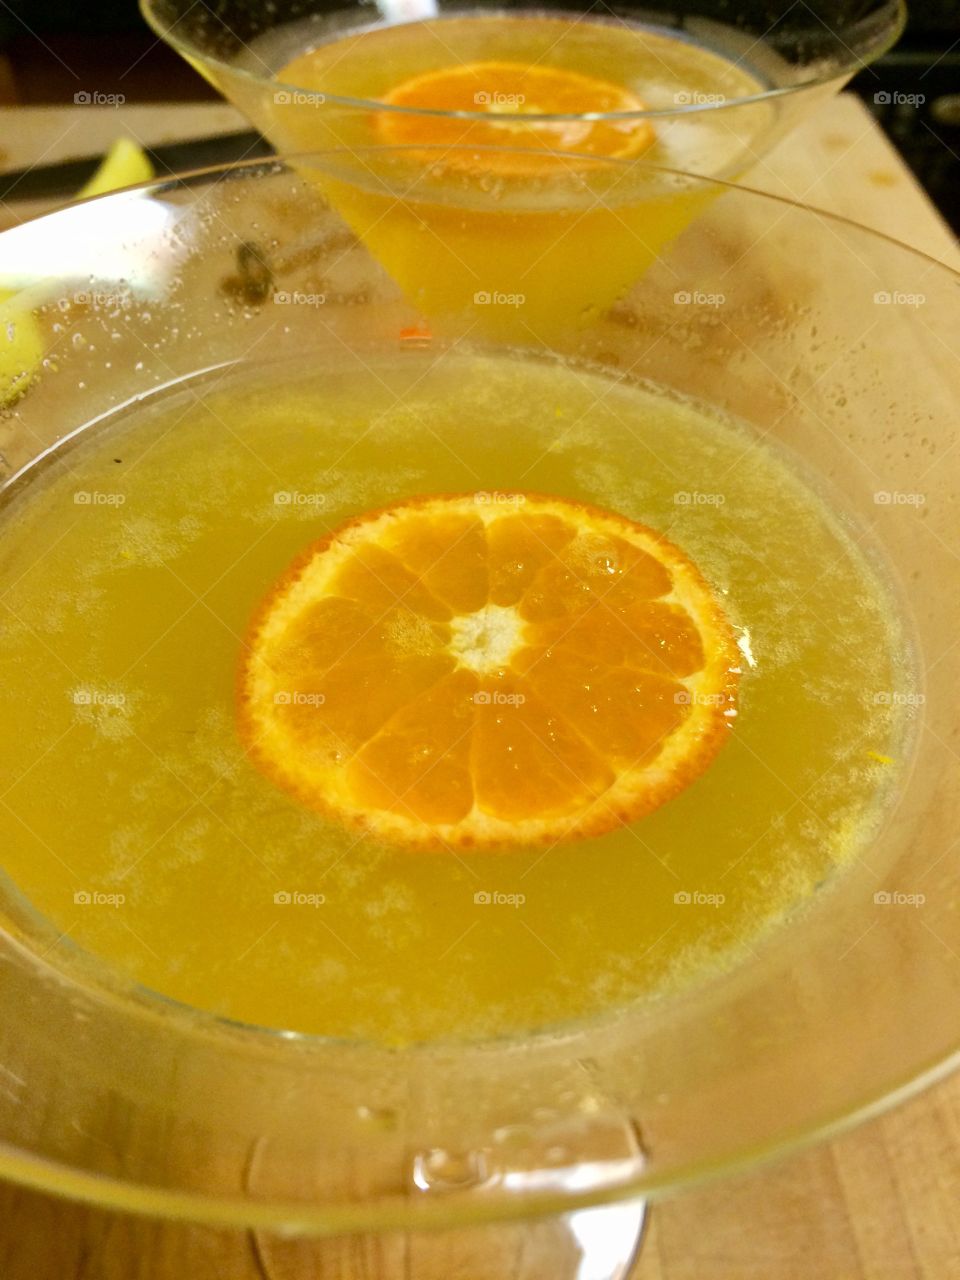 Citrus martinis